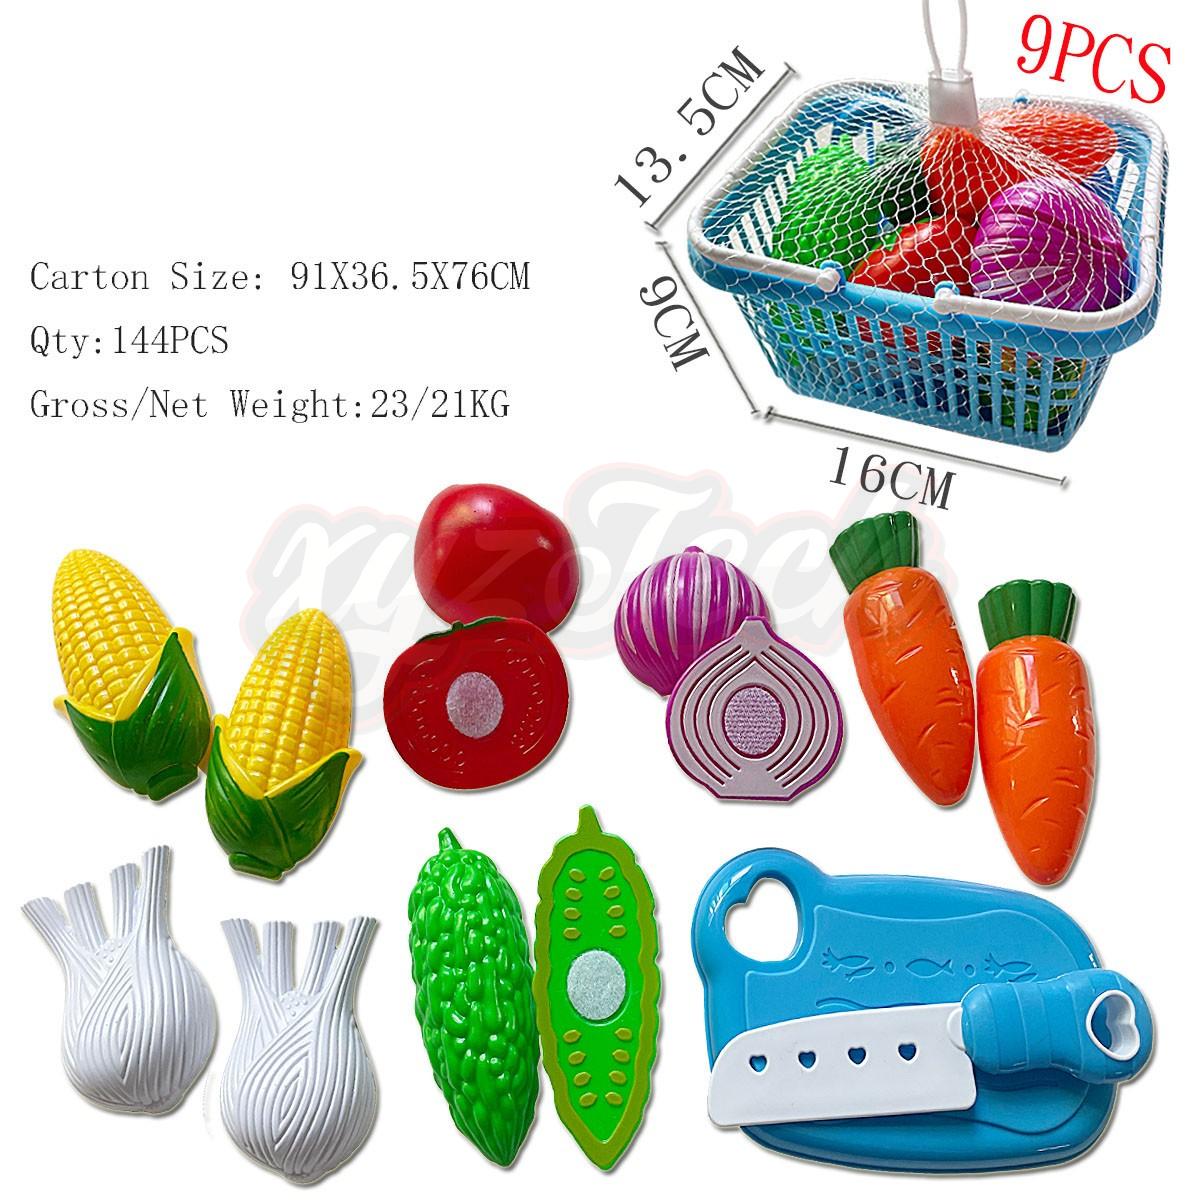 Handheld basket can cut vegetables